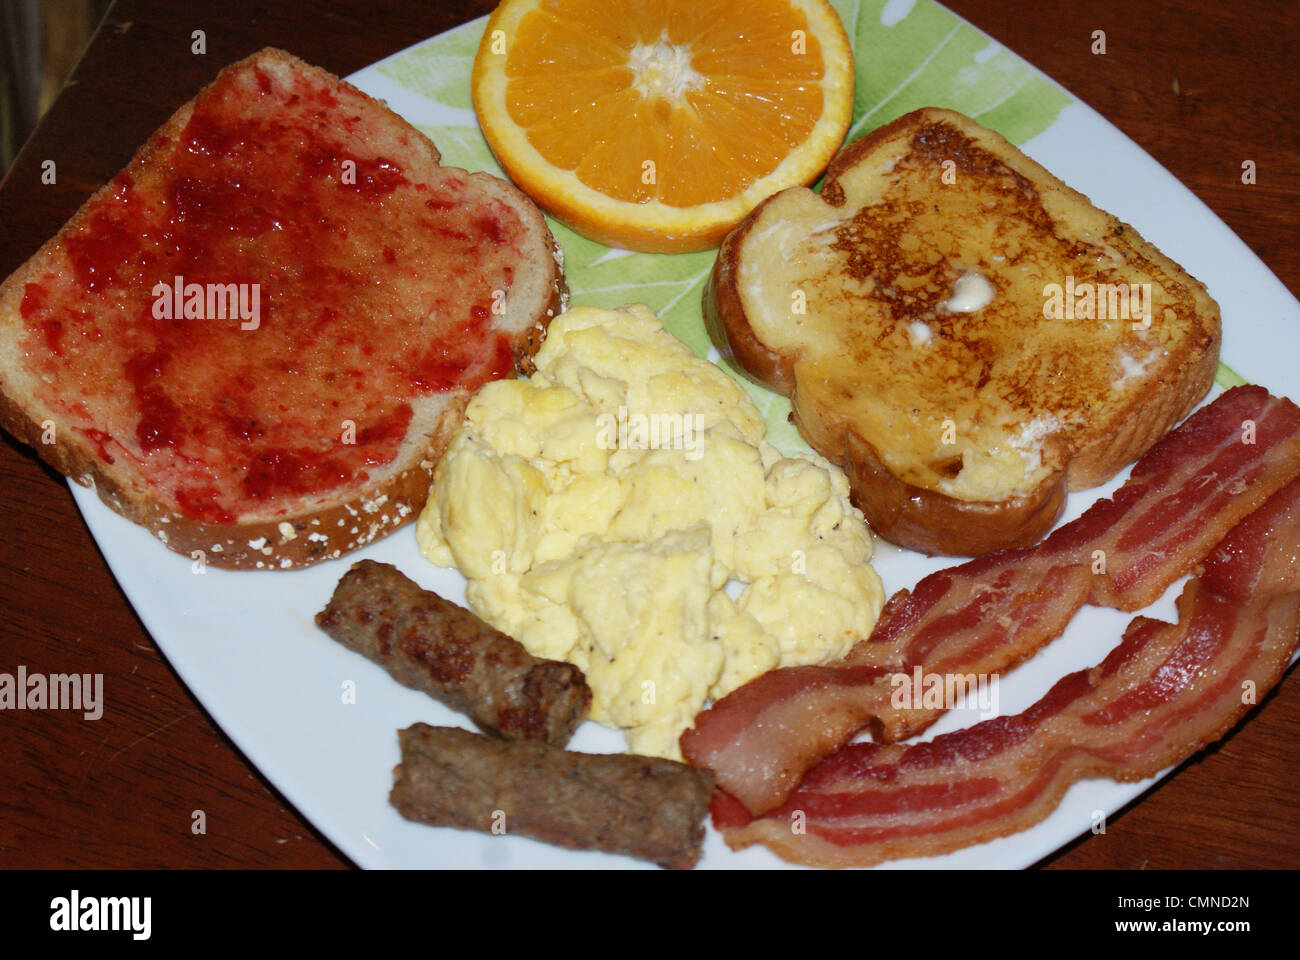 Frühstück Essen. Stockfoto